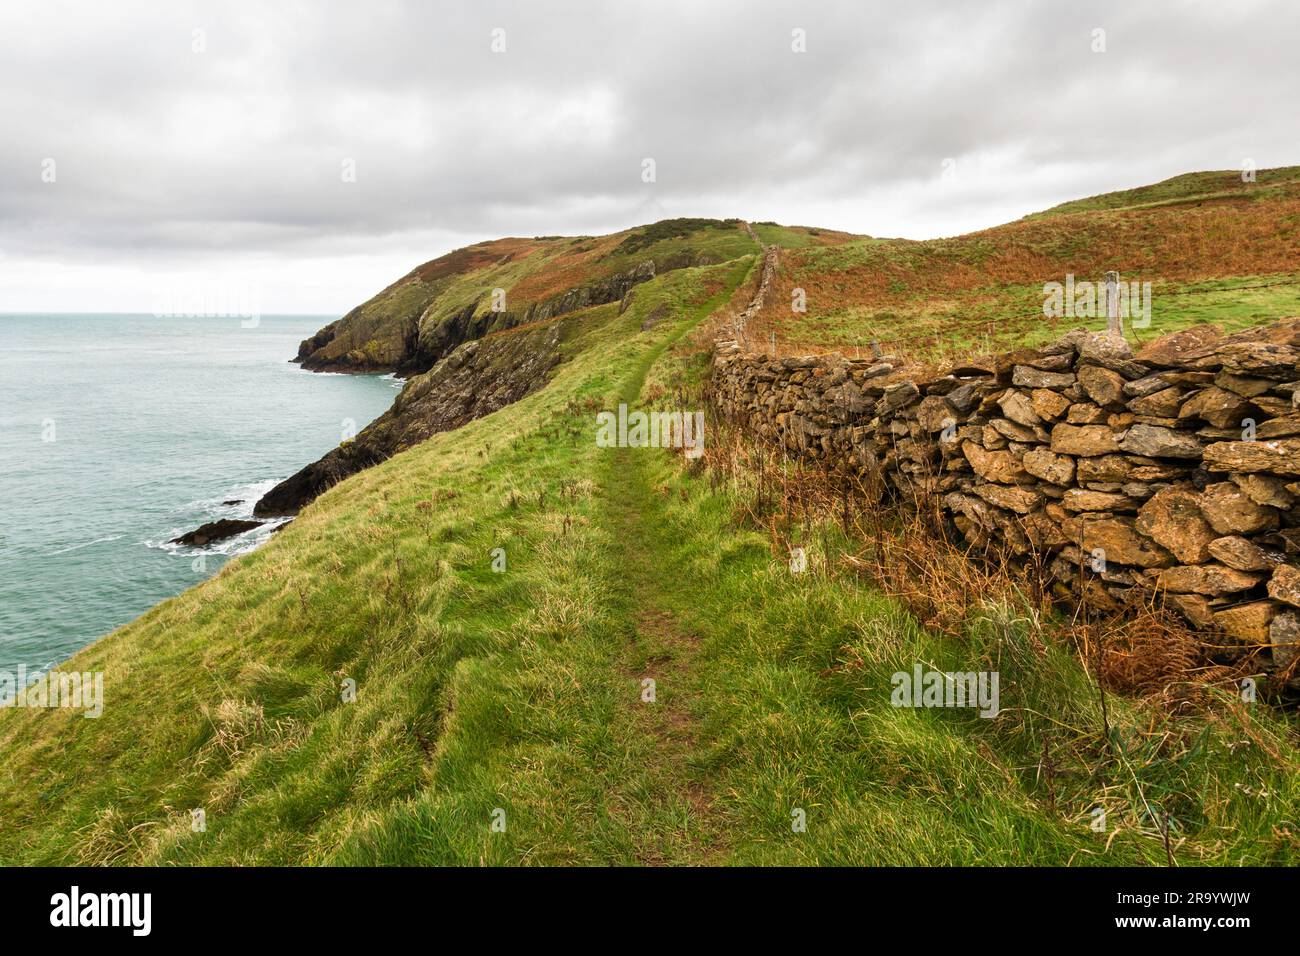 Anglesey North Coastal Path, pays de Galles. Chemin d'automne ou d'automne avec mur de pierre sèche, et mer à distance, paysage, grand angle Banque D'Images